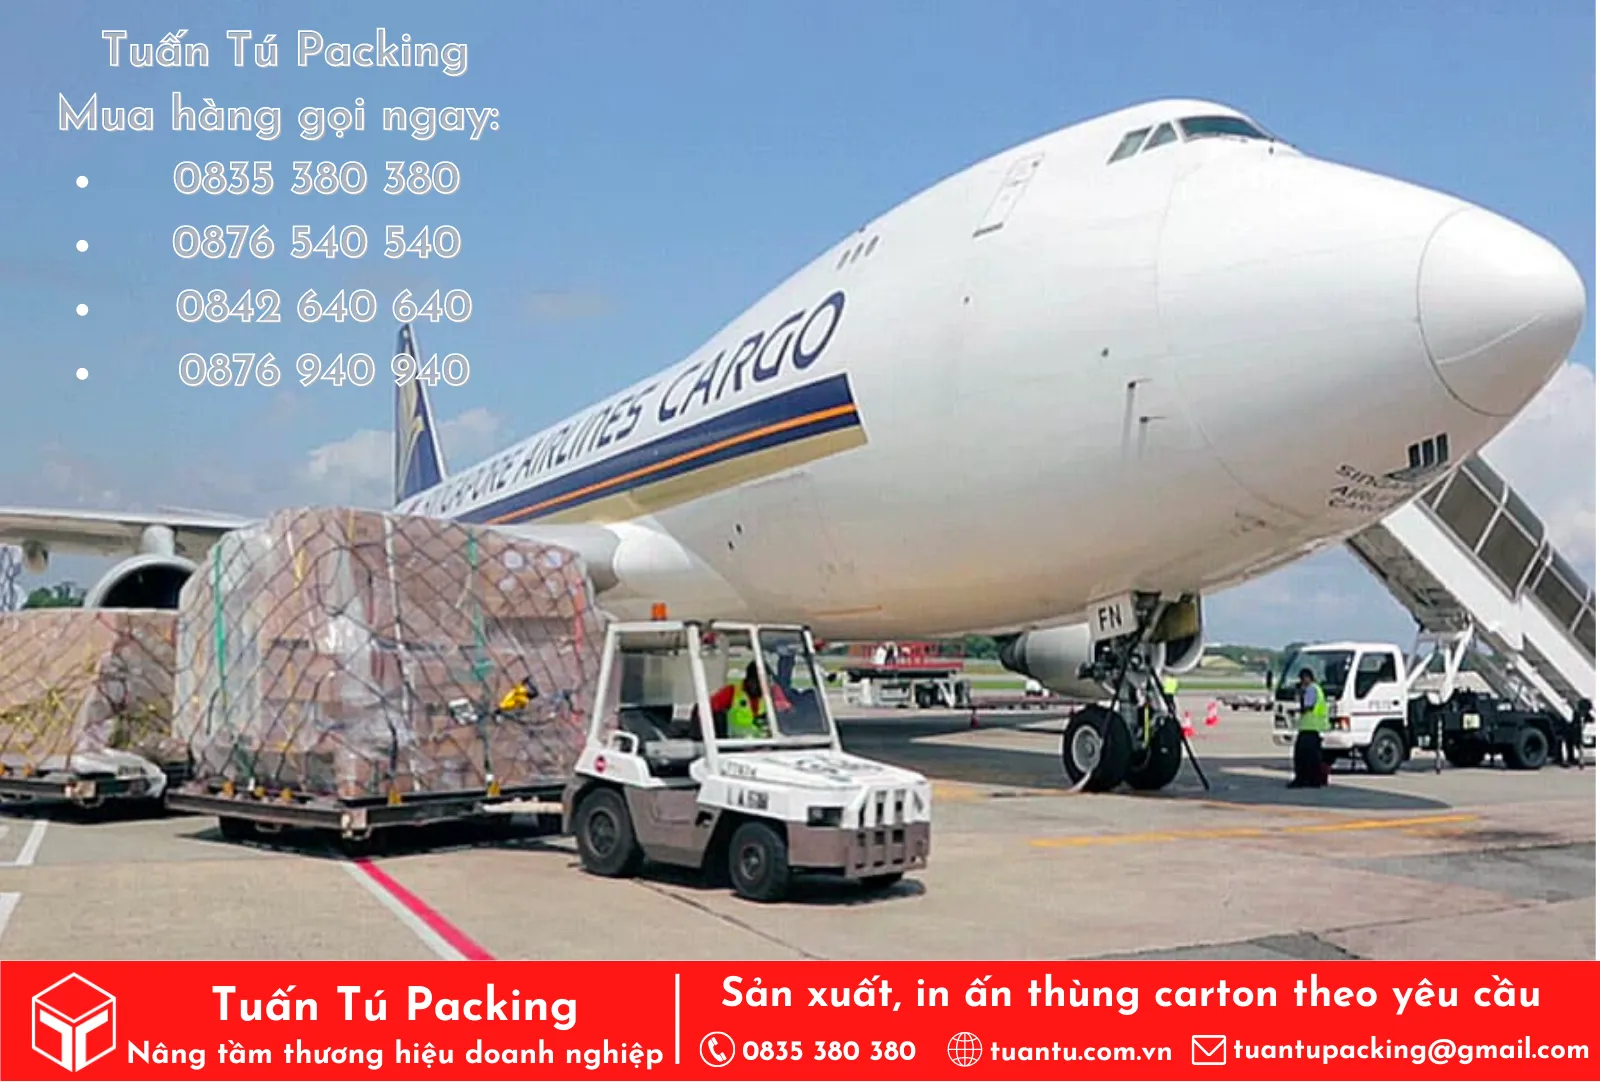 Tuấn Tú - Chuyên cung cấp thùng carton đi máy bay TPHCM